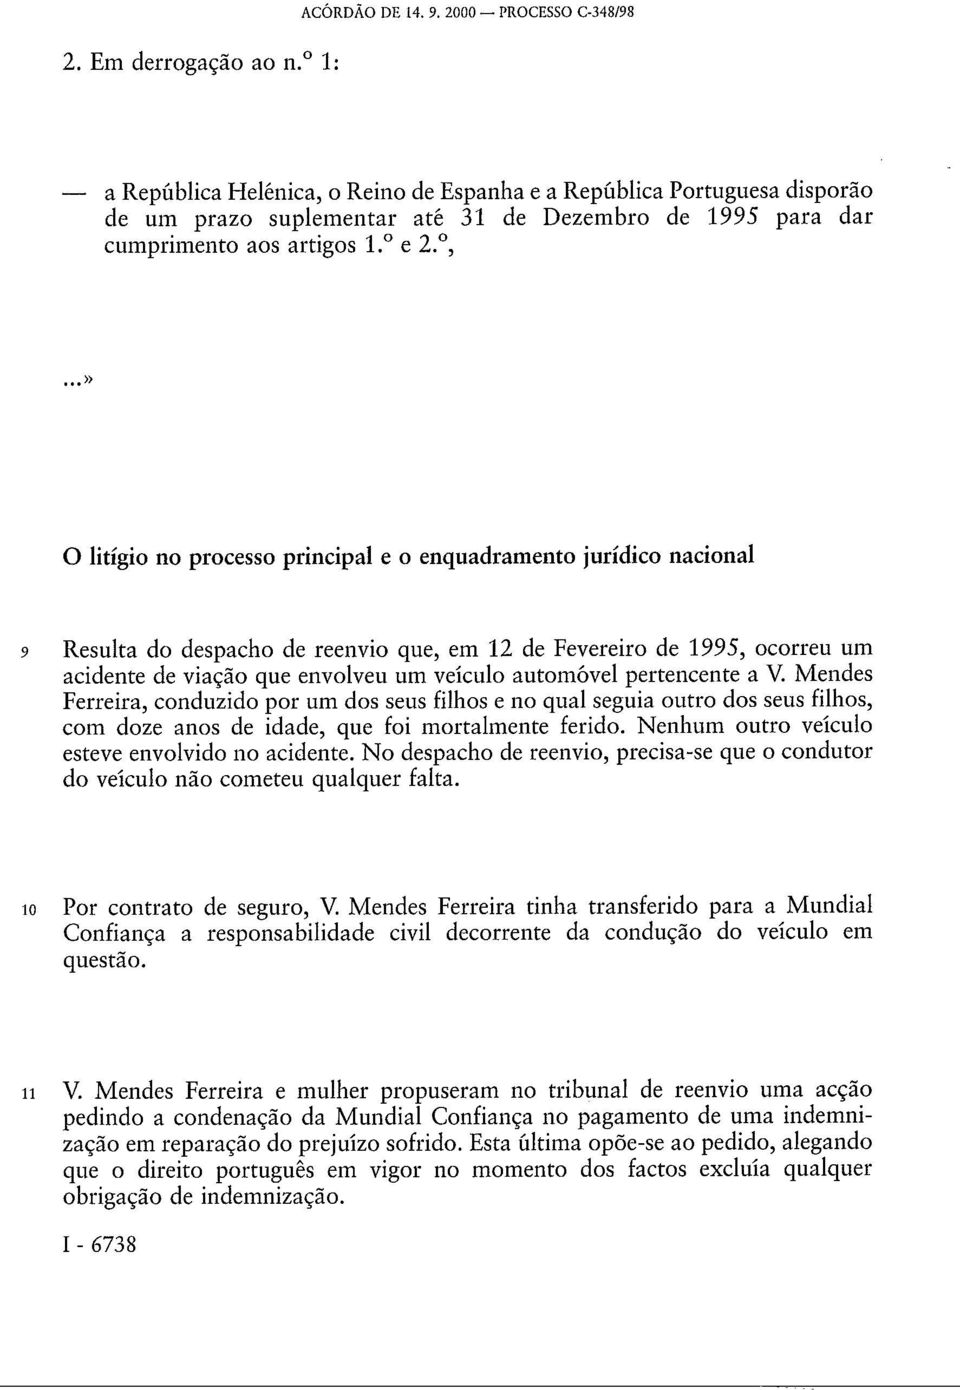 o Reino de Espanha e a República Portuguesa disporão de um prazo suplementar até 31 de Dezembro de 1995 para dar cumprimento aos artigos 1. e 2.,.